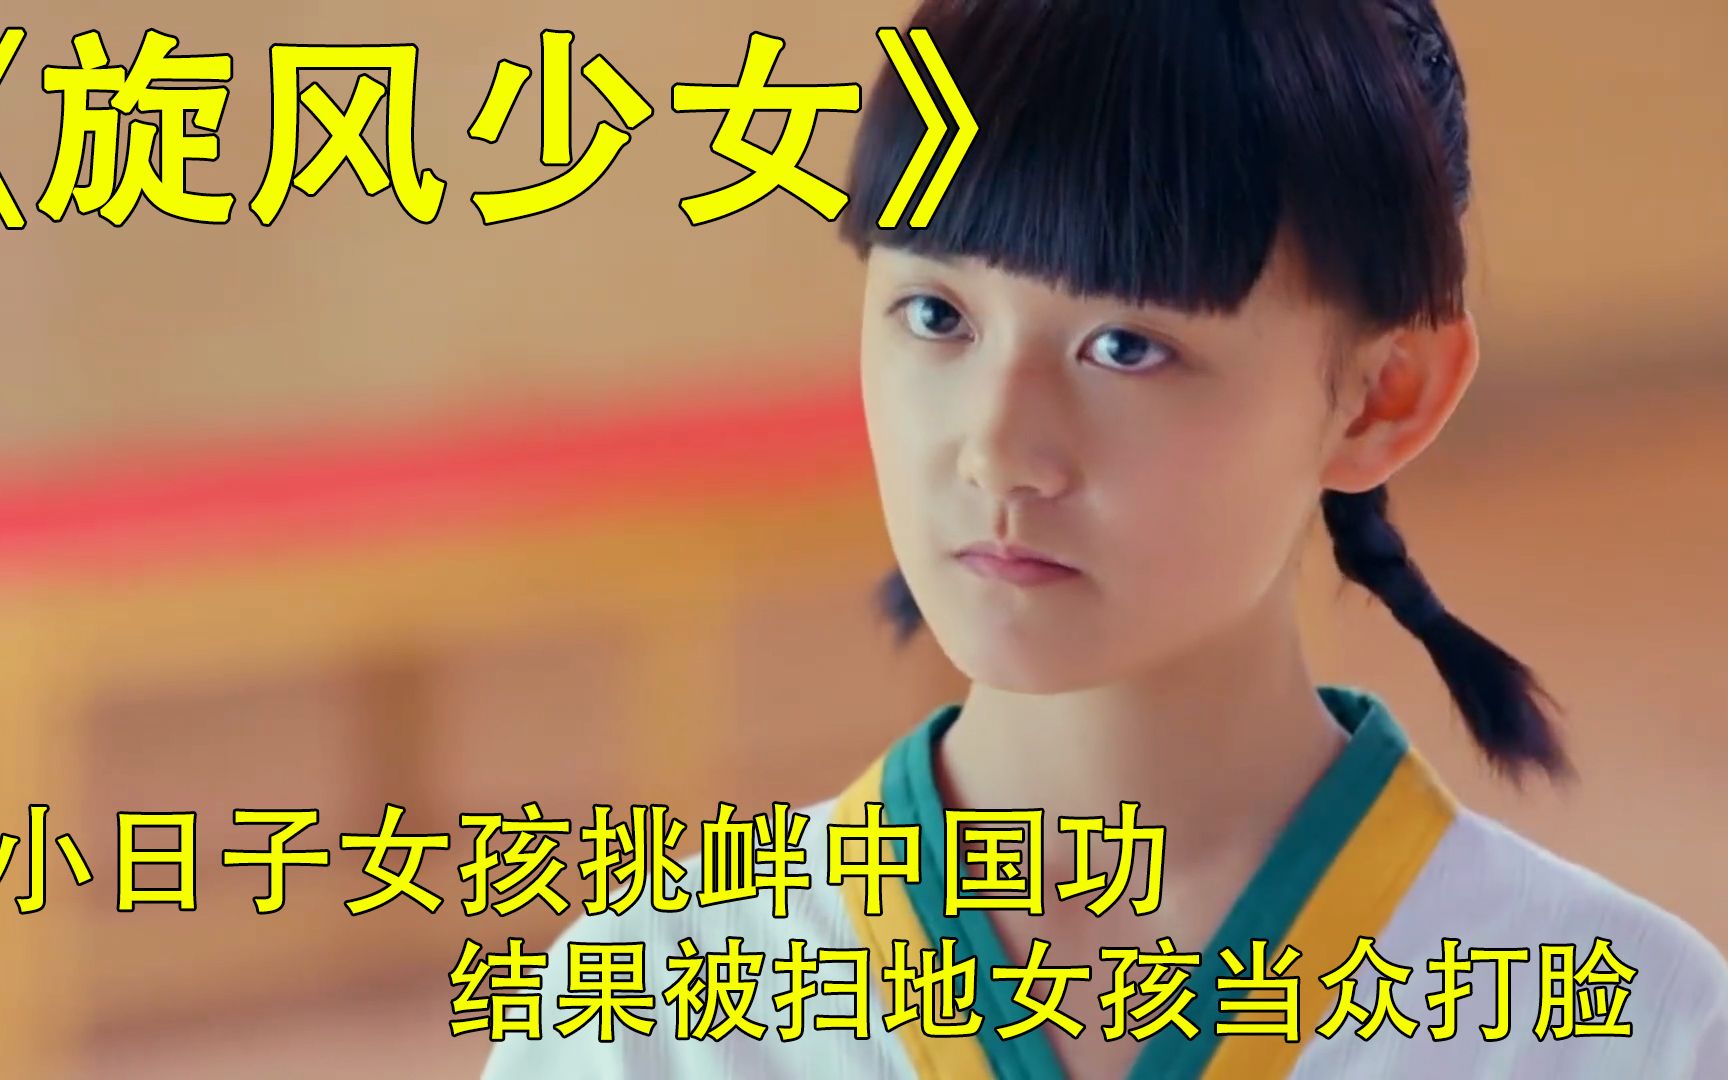 日本女孩挑衅中国功夫，结果被扫地女孩当众打脸